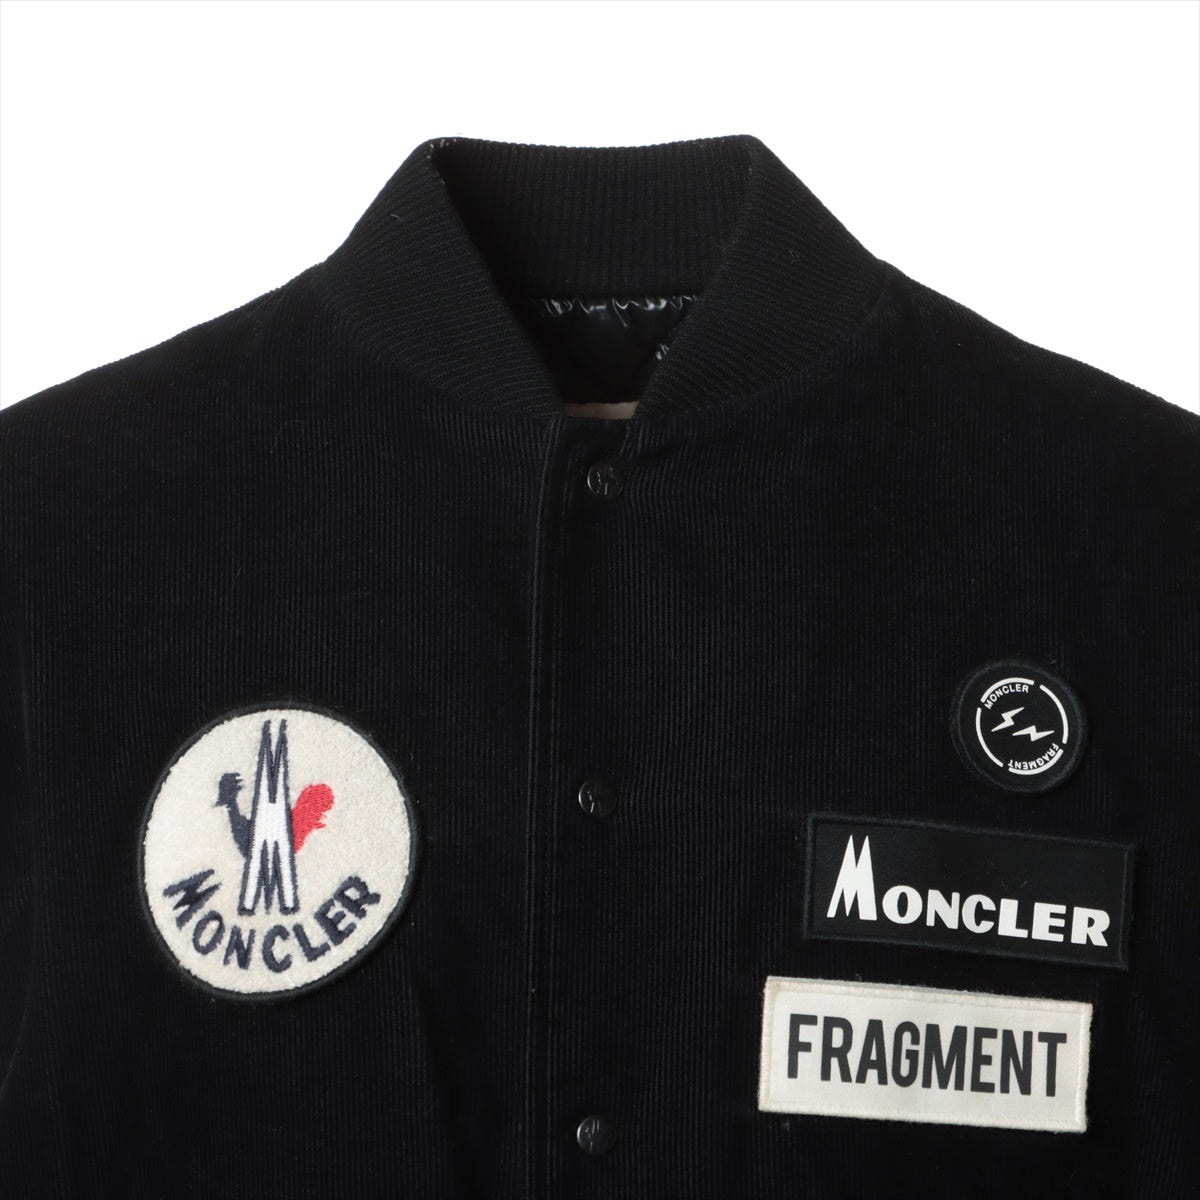 Moncler Genius Fragment SVEN 18 years Cotton & Wool Down jacket 1 Men's Black × White  Hiroshi Fujiwara Corduroy Stadium jumper